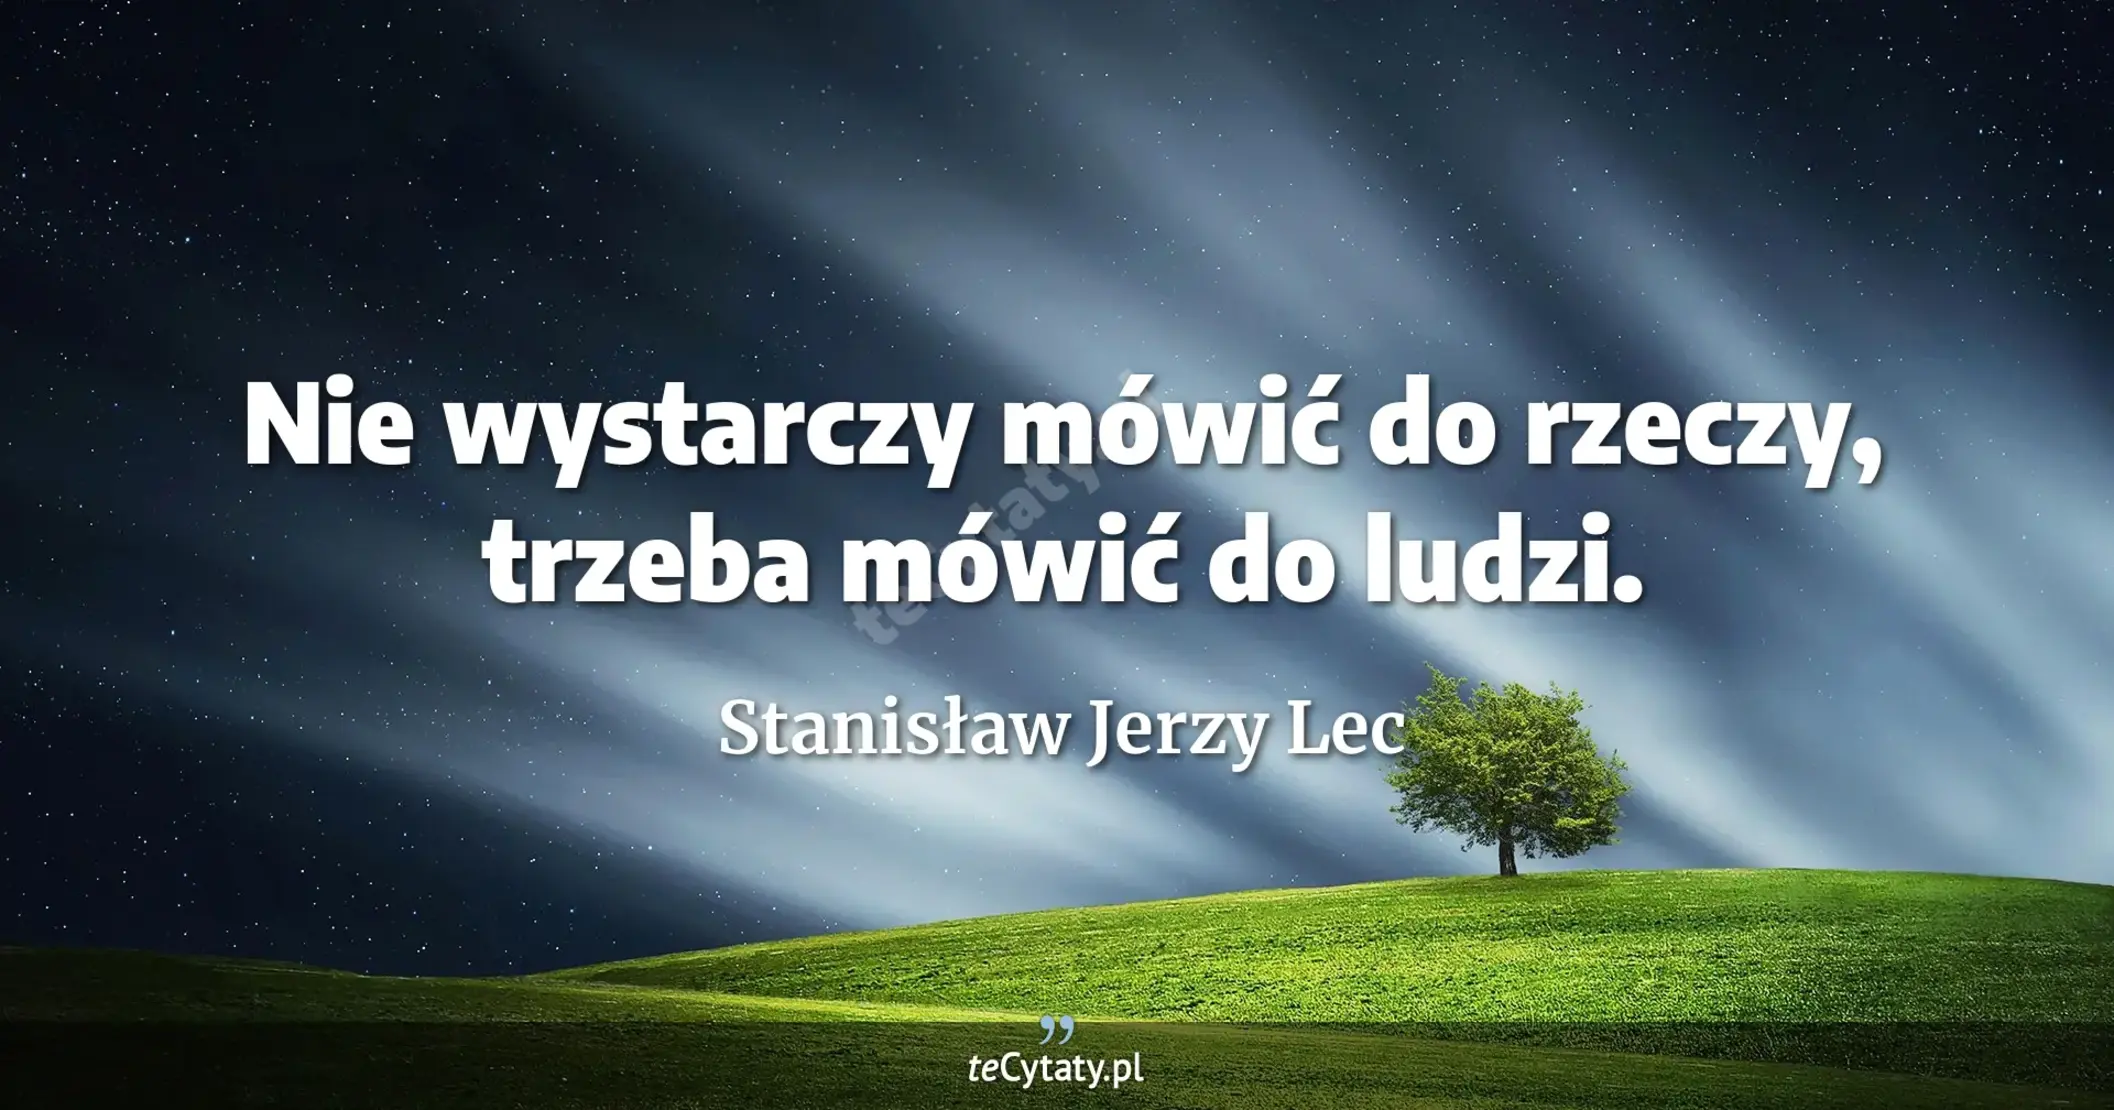 Nie wystarczy mówić do rzeczy, trzeba mówić do ludzi. - Stanisław Jerzy Lec